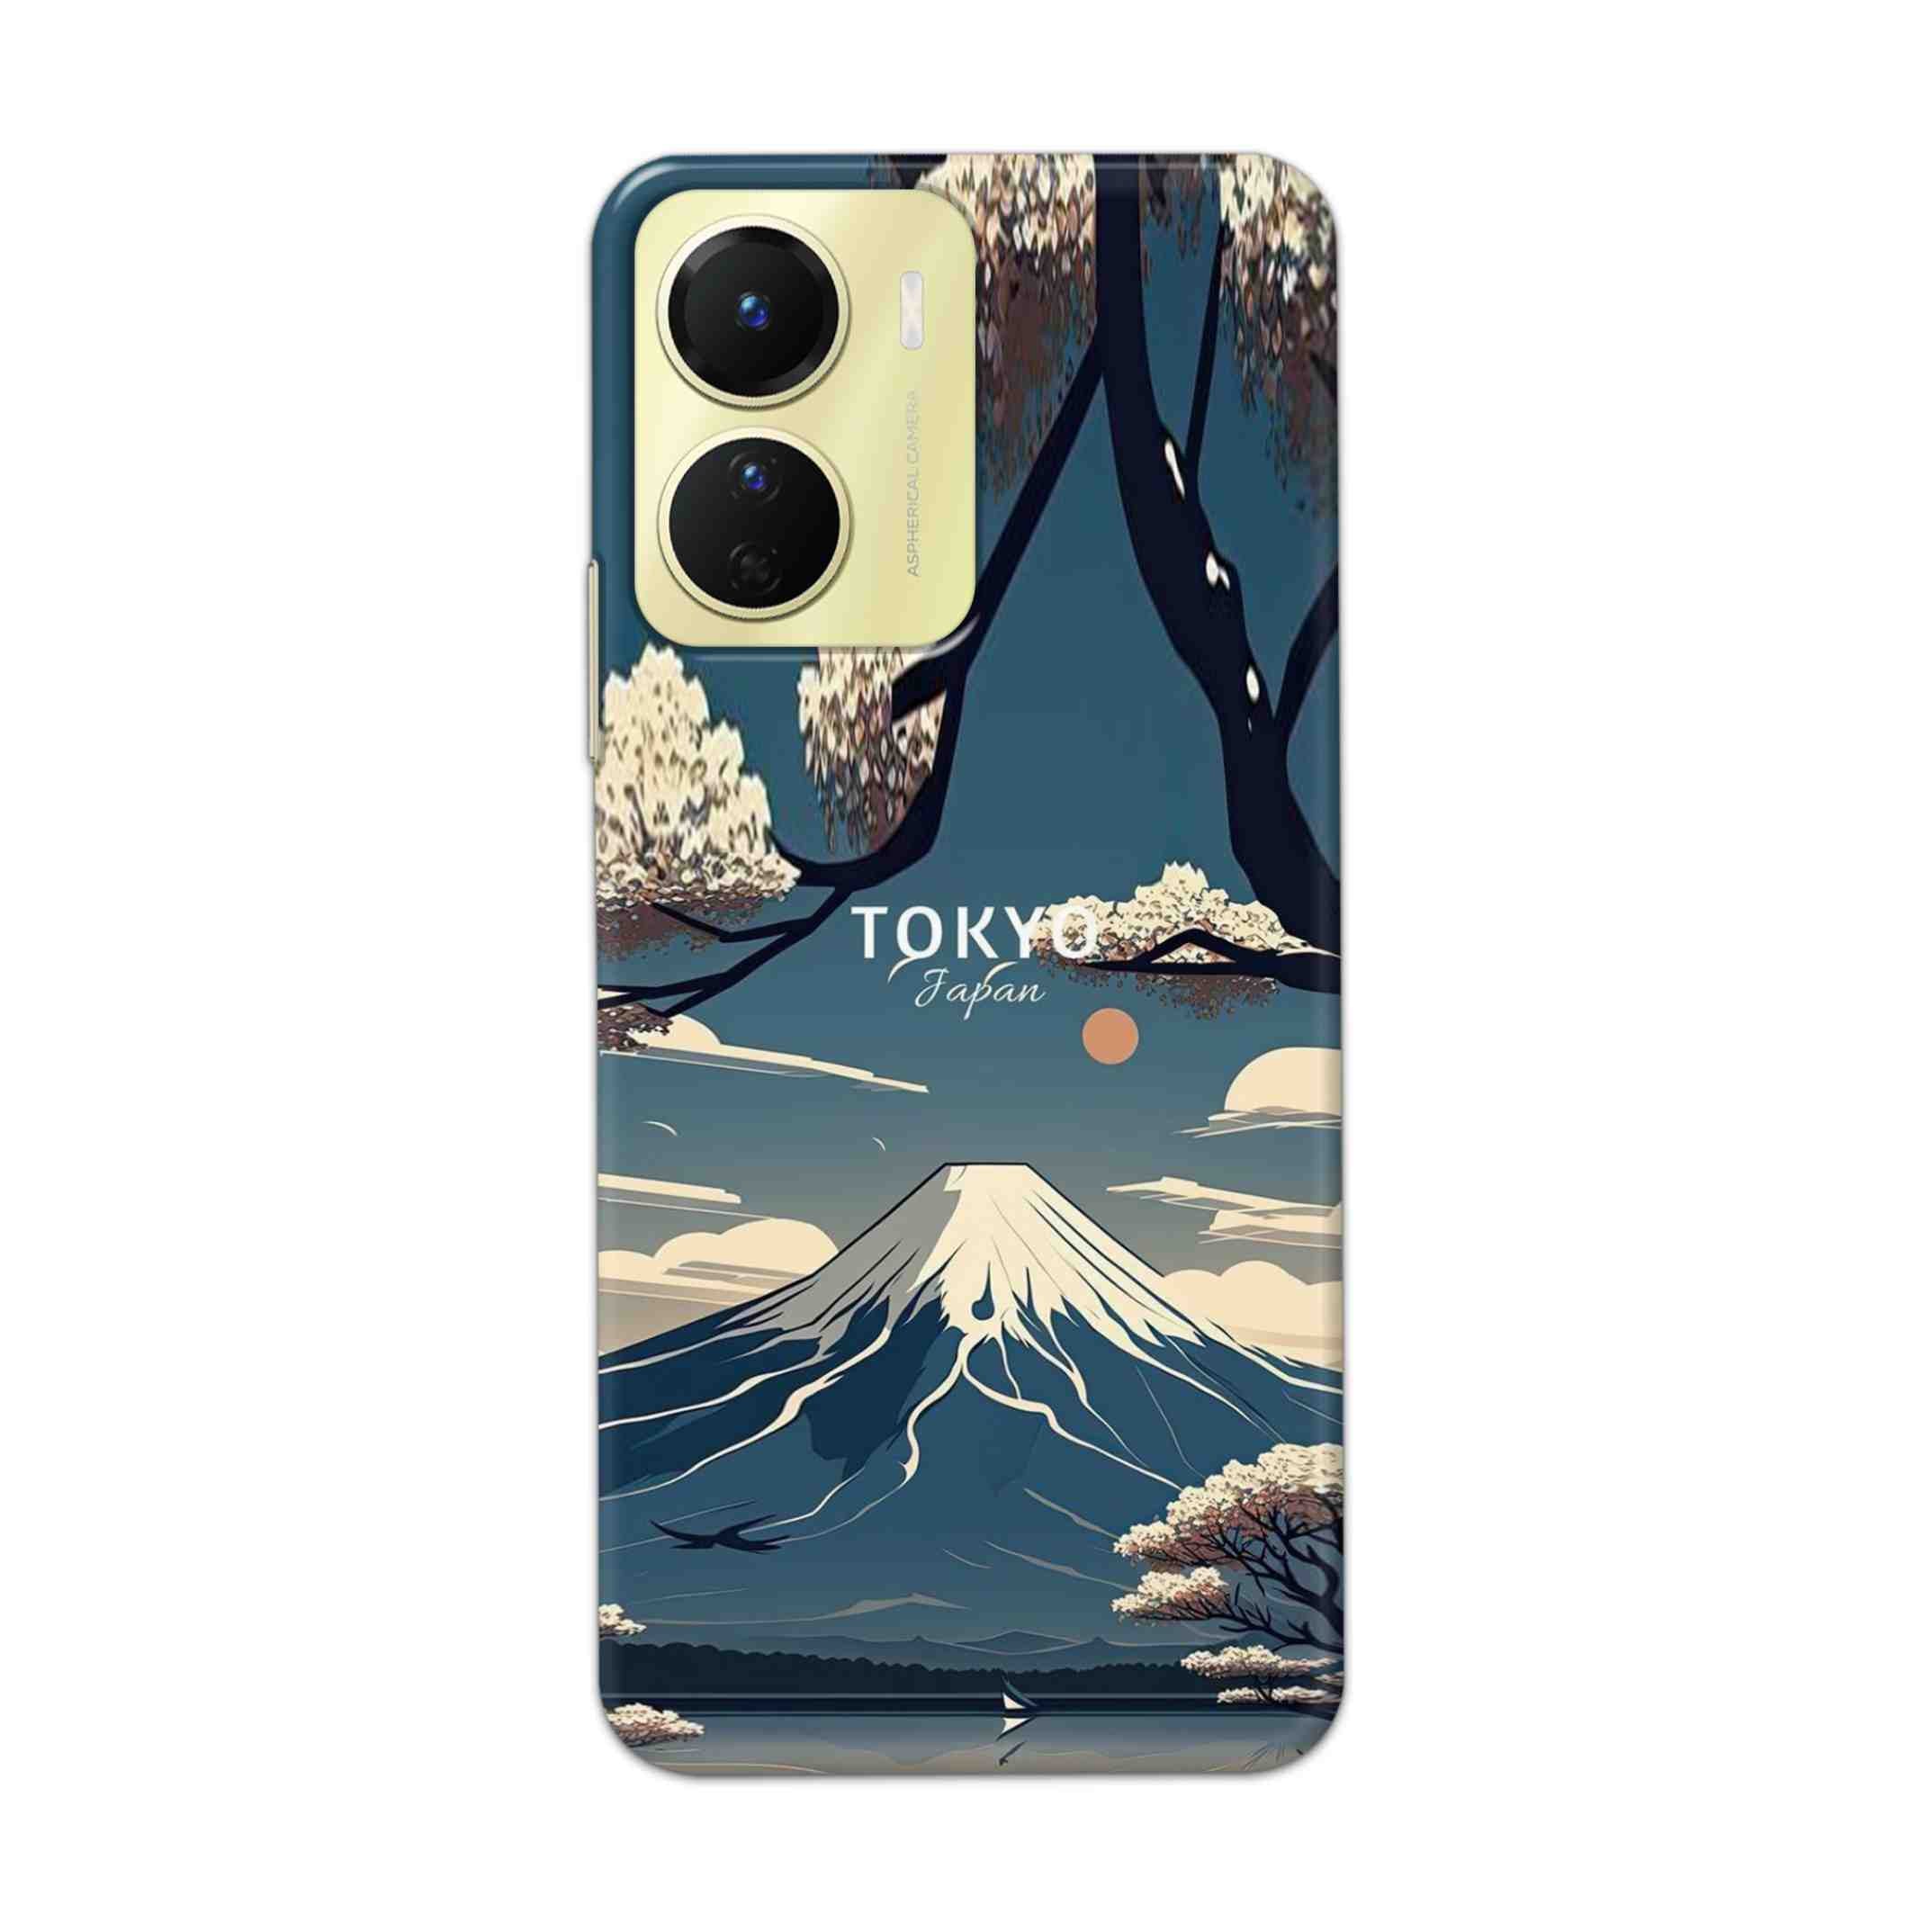 Buy Tokyo Hard Back Mobile Phone Case Cover For Vivo Y16 Online